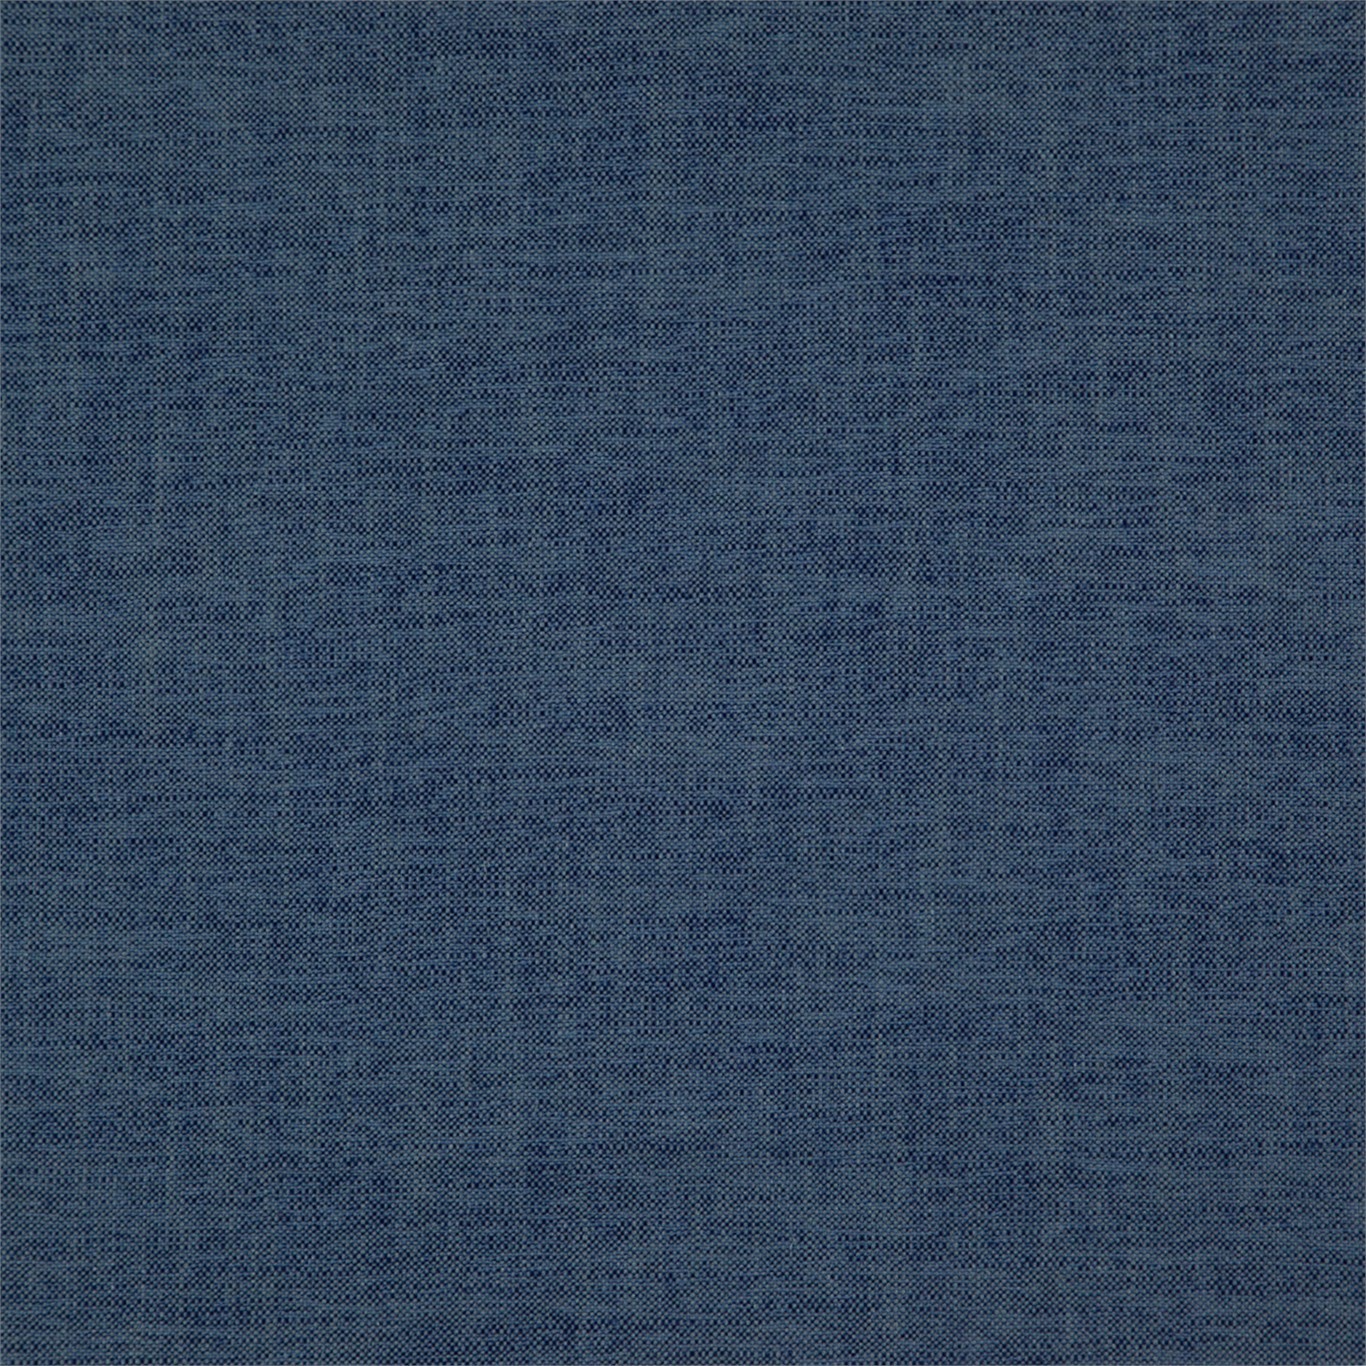 Kanela Azure Fabric by HAR